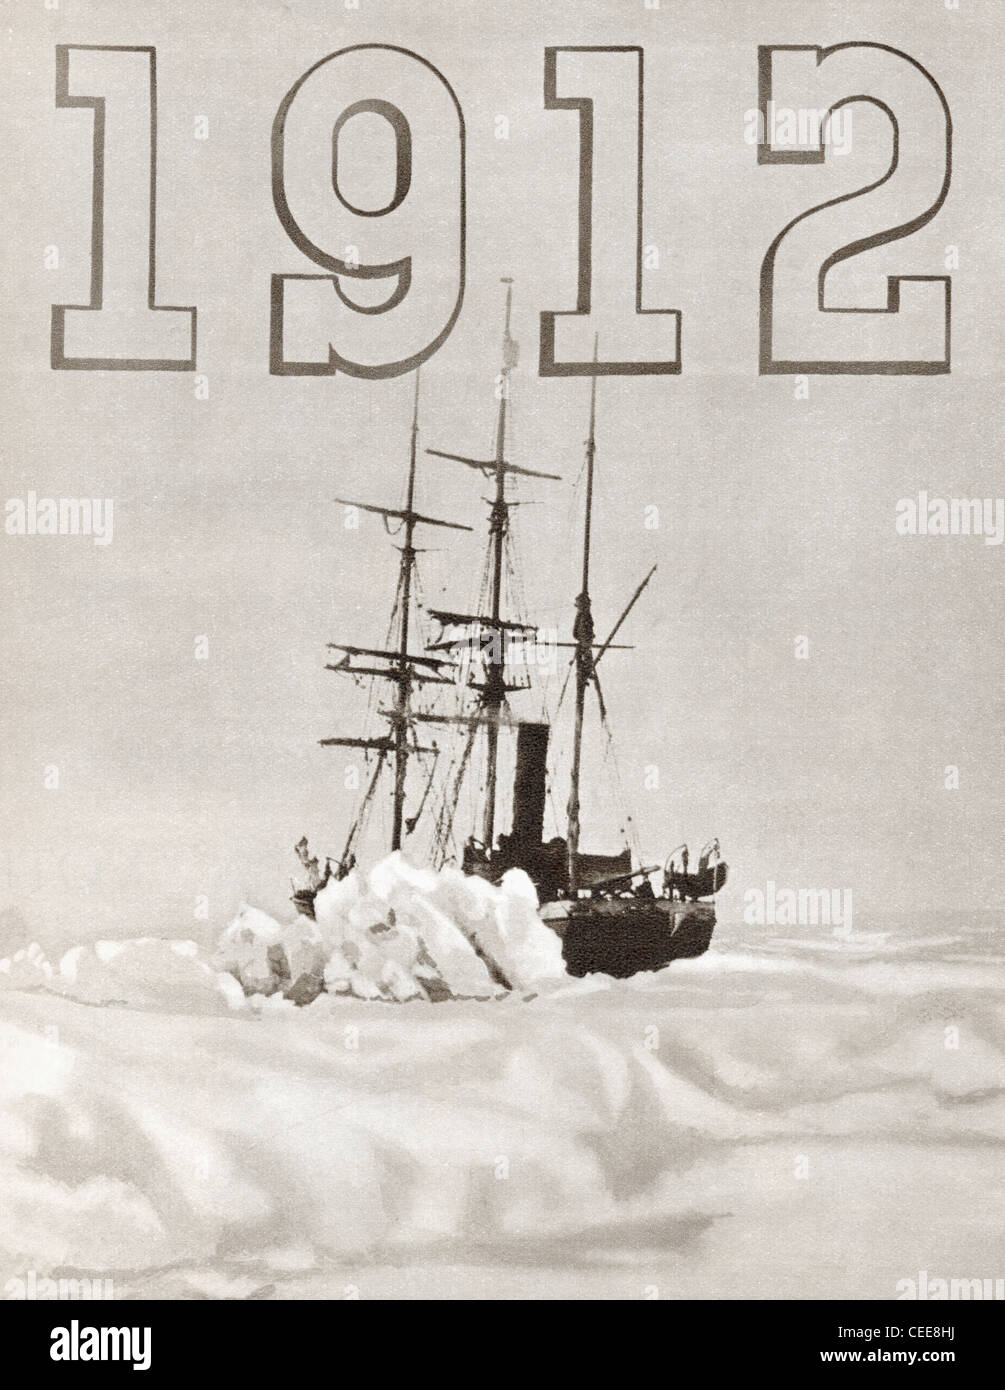 Le Terra Nova navire utilisé par Robert Falcon Scott au cours de l'expédition Terra Nova au pôle sud en 1912. Banque D'Images